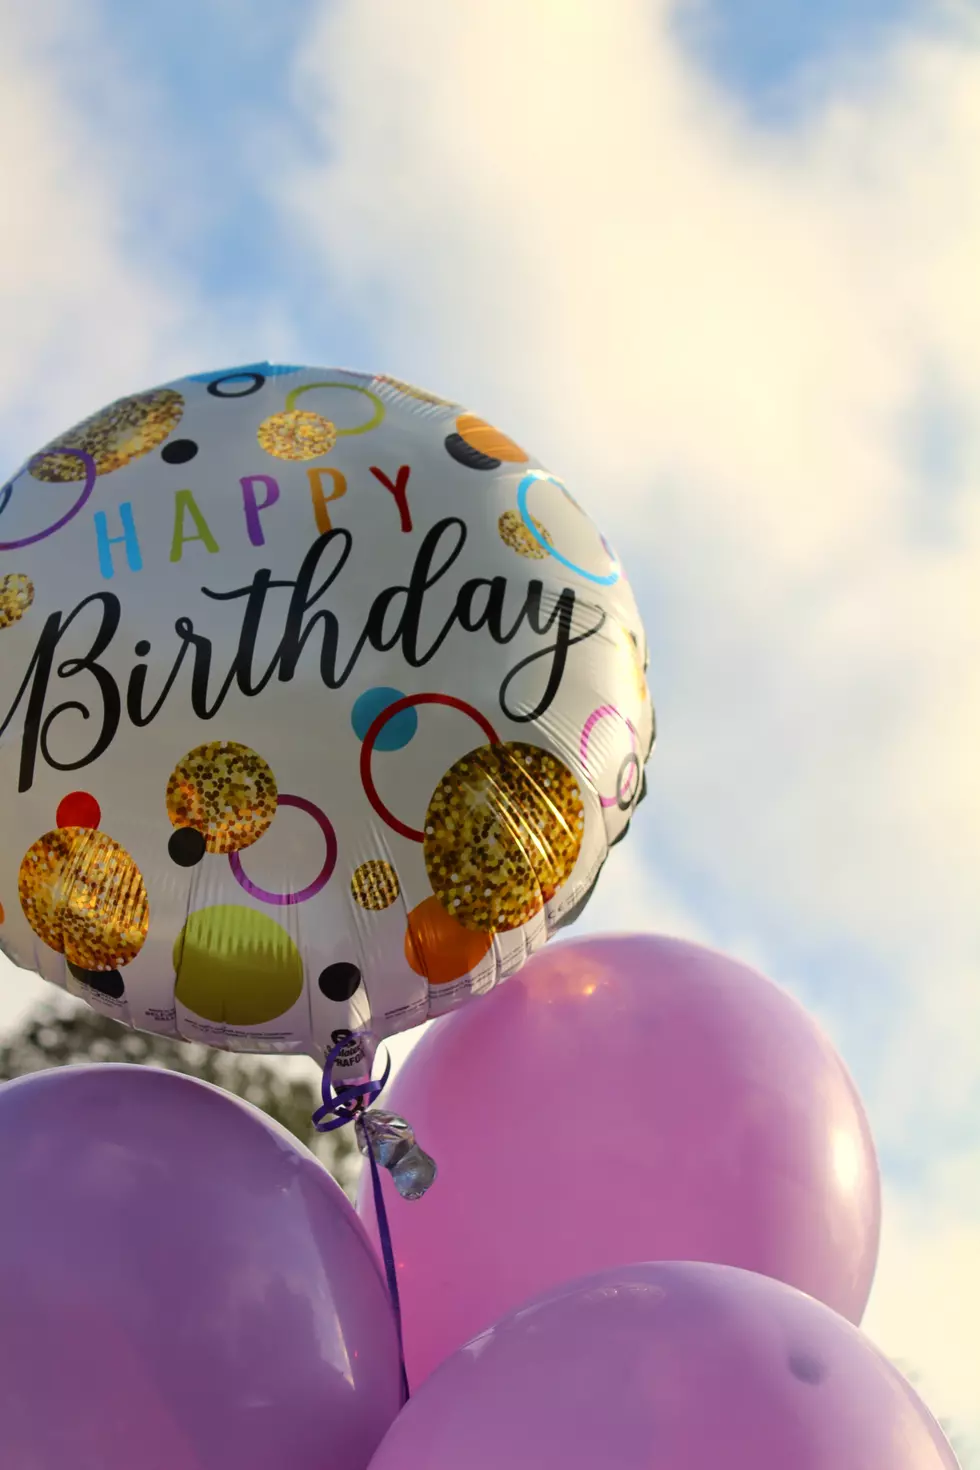 Do Southwest Michigan Restaurants Offer Free Birthday Specials?